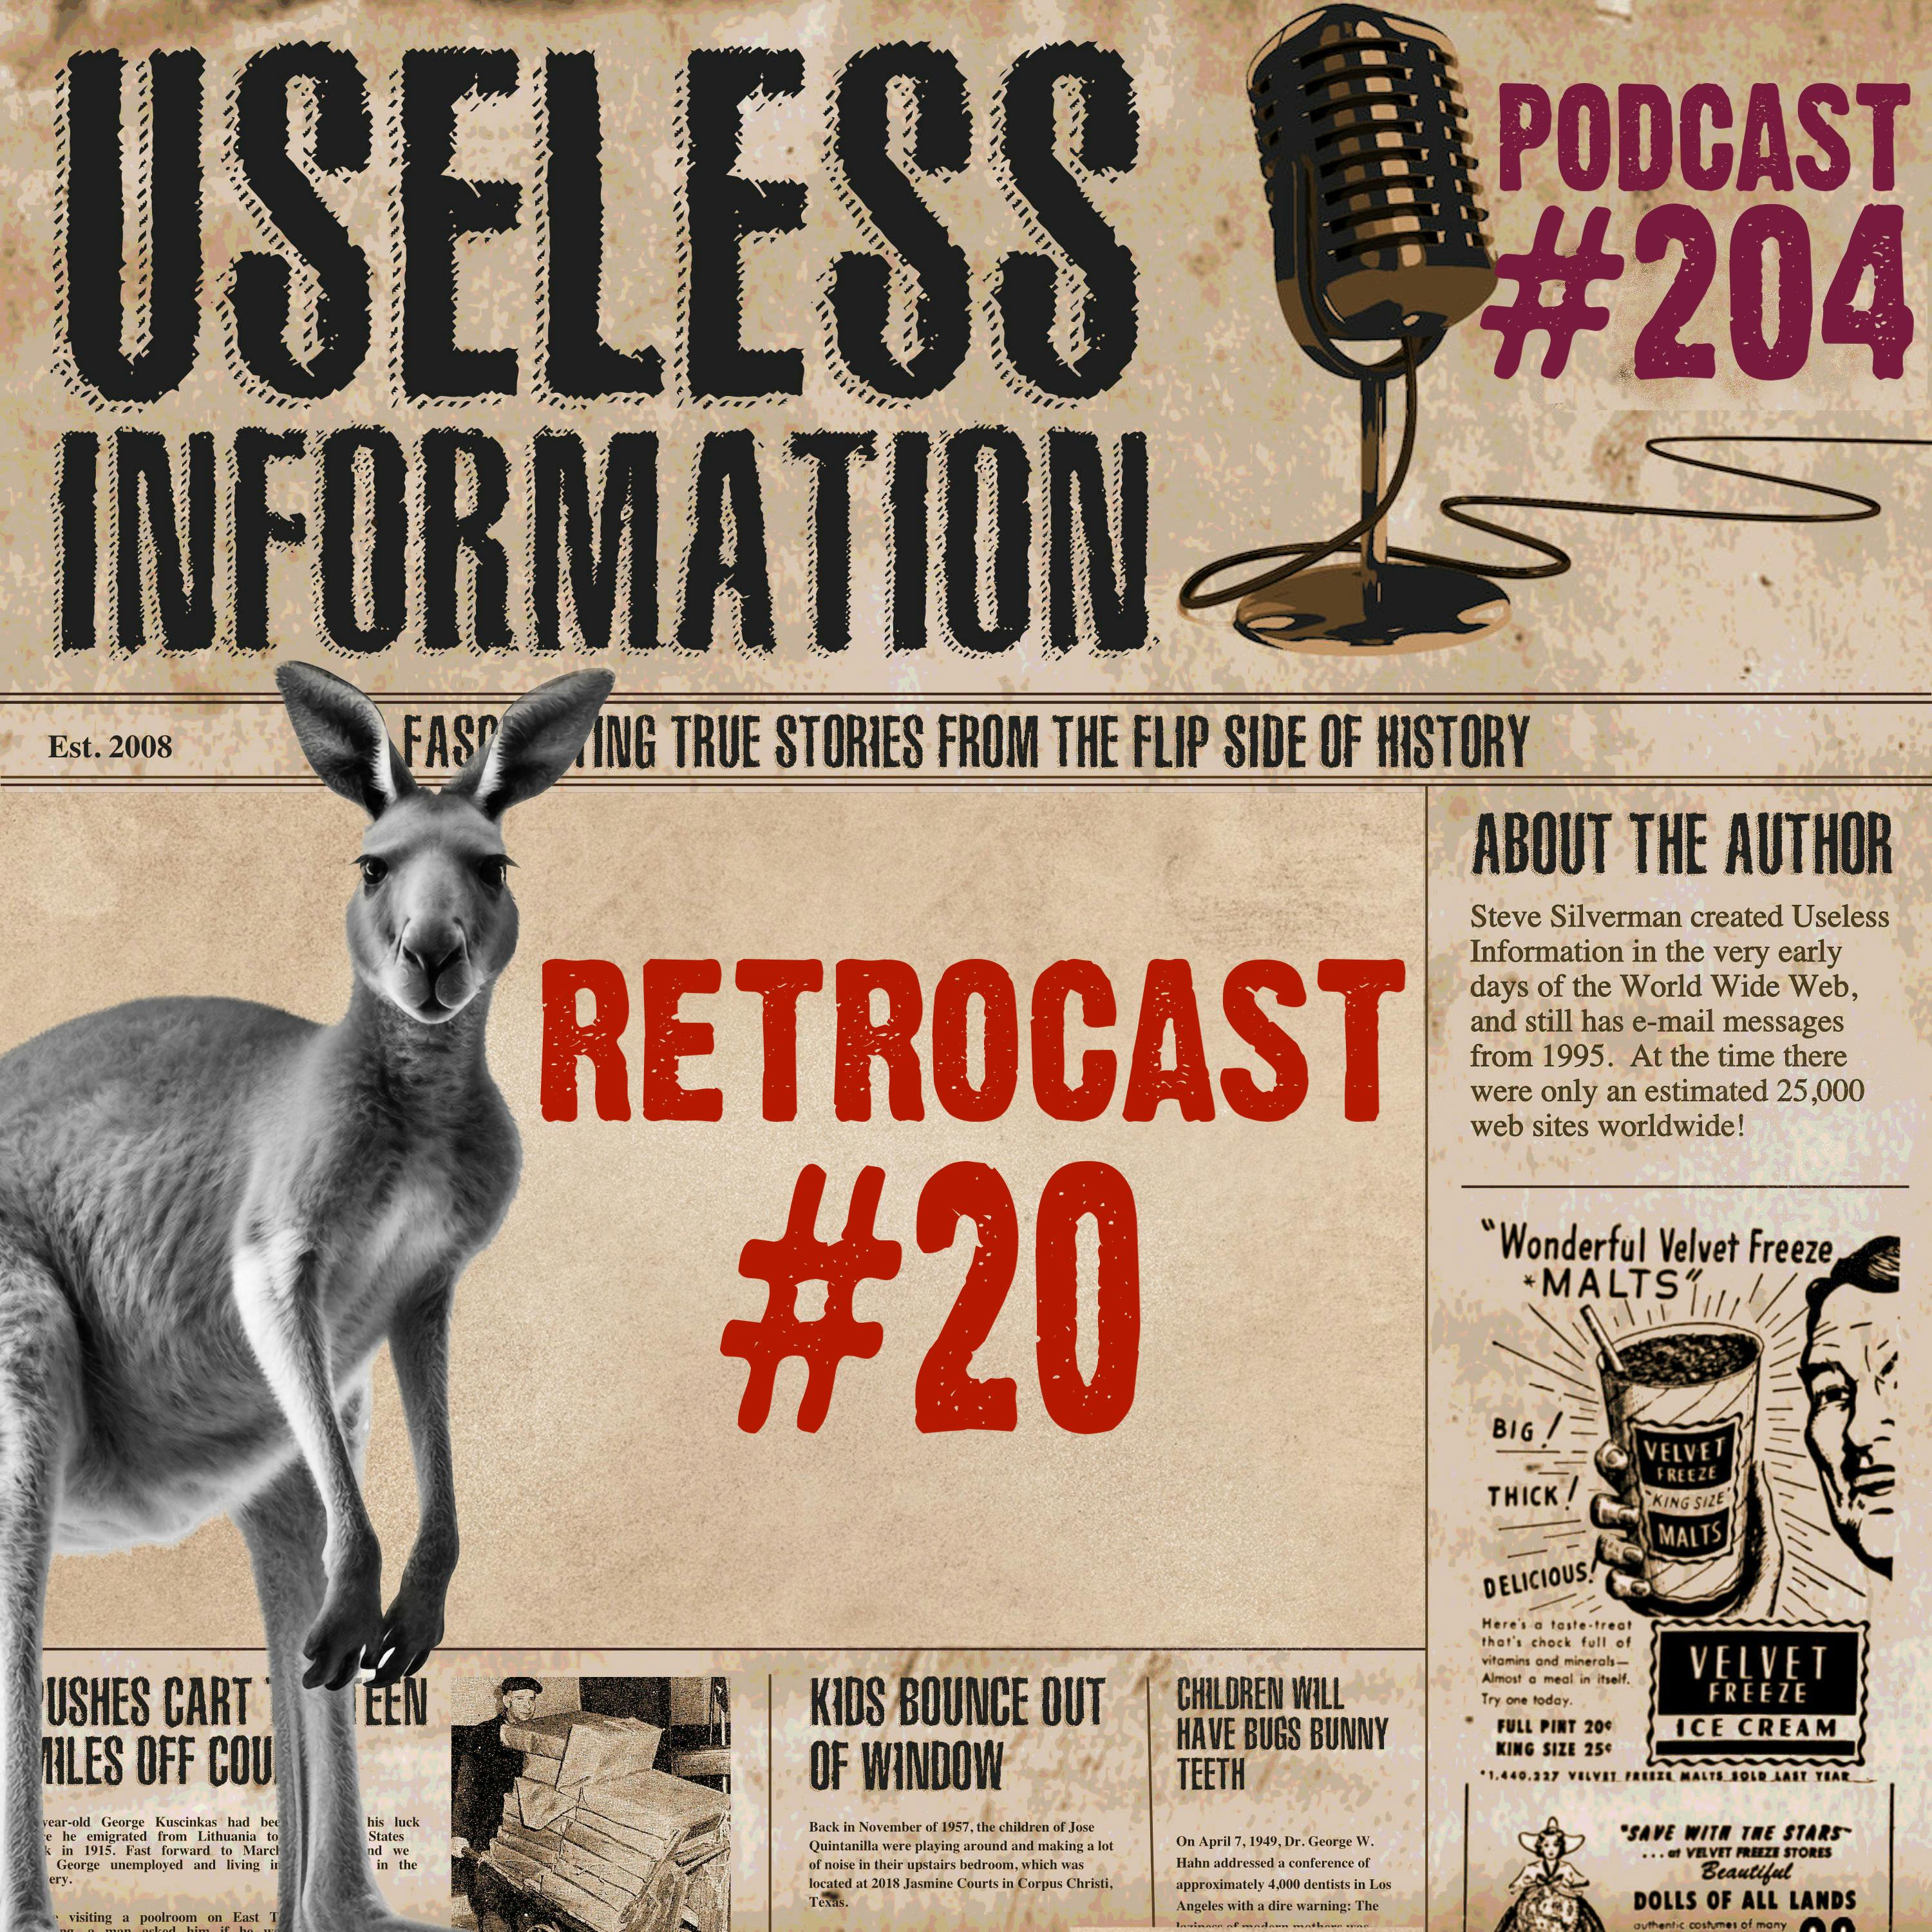 Retrocast #20 - UI Podcast #204